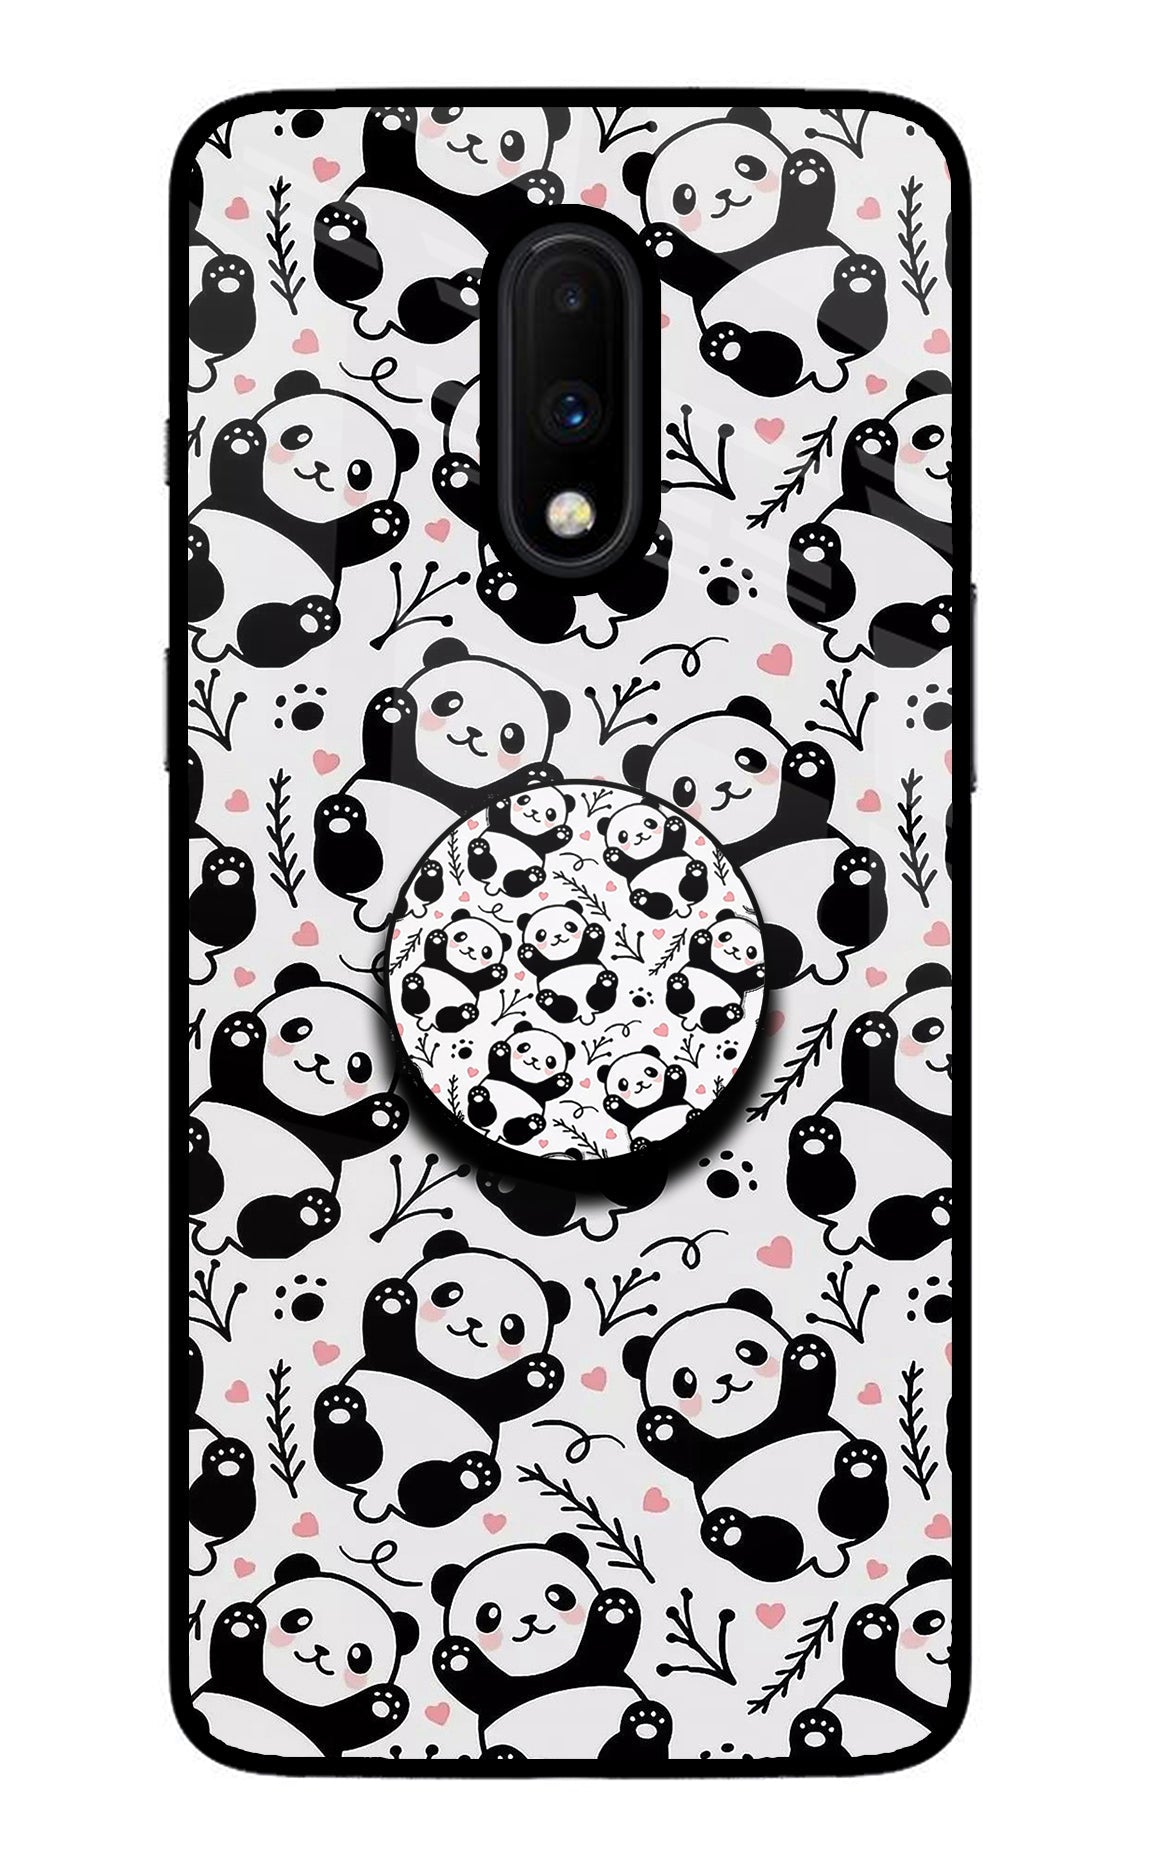 Cute Panda Oneplus 7 Glass Case